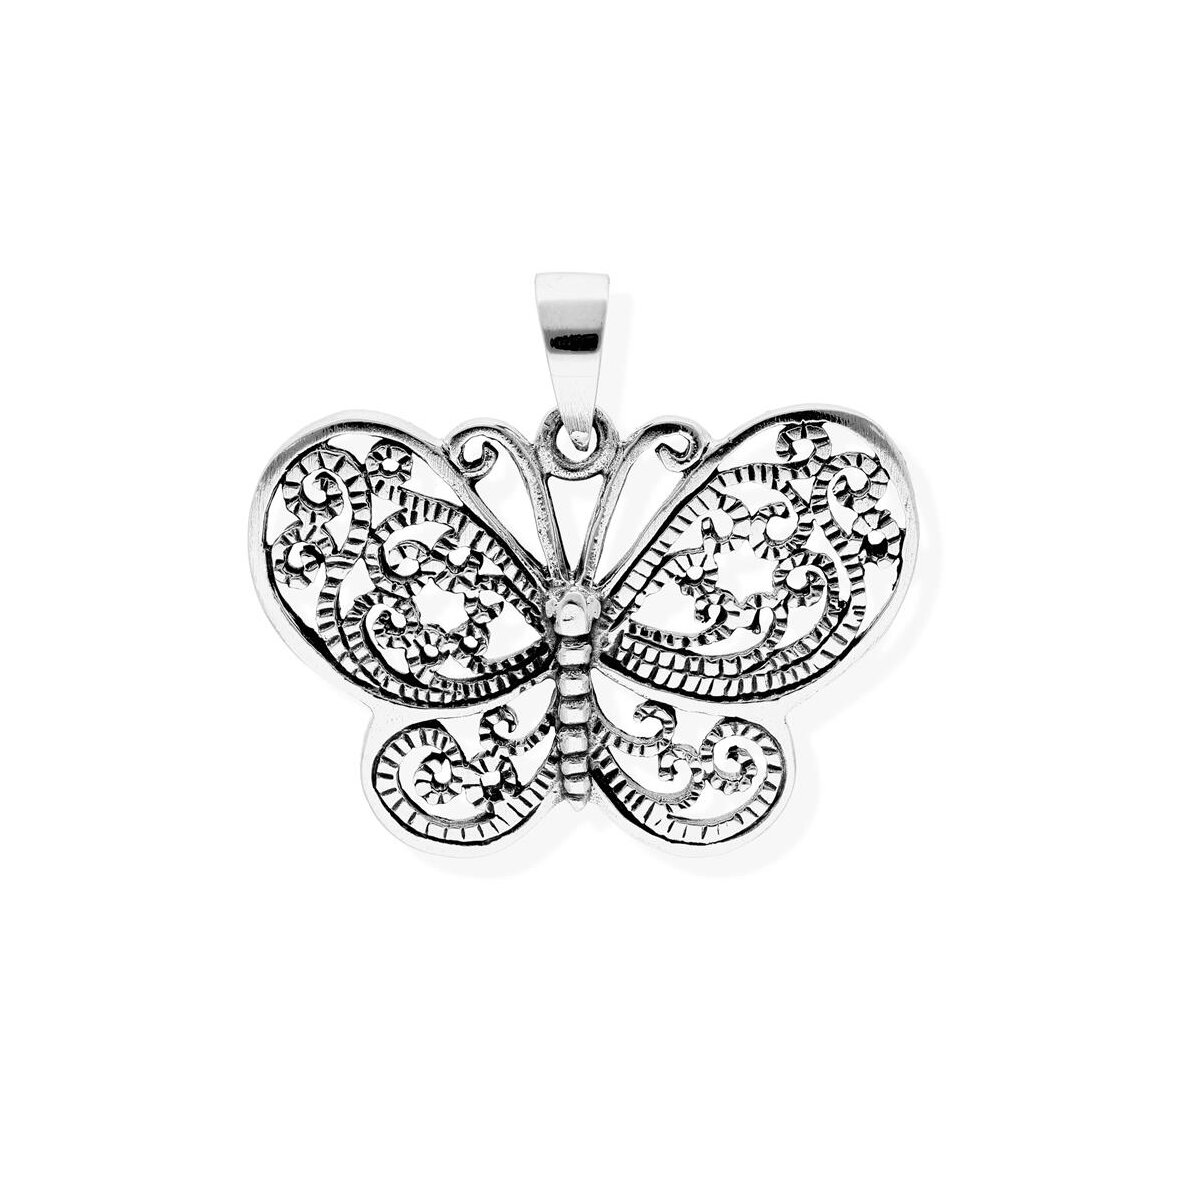 viTalisman Unisex Amulett Kettenanhänger symbolisch Schmetterling aus 925  Sterling Silber geschwärzt 36059